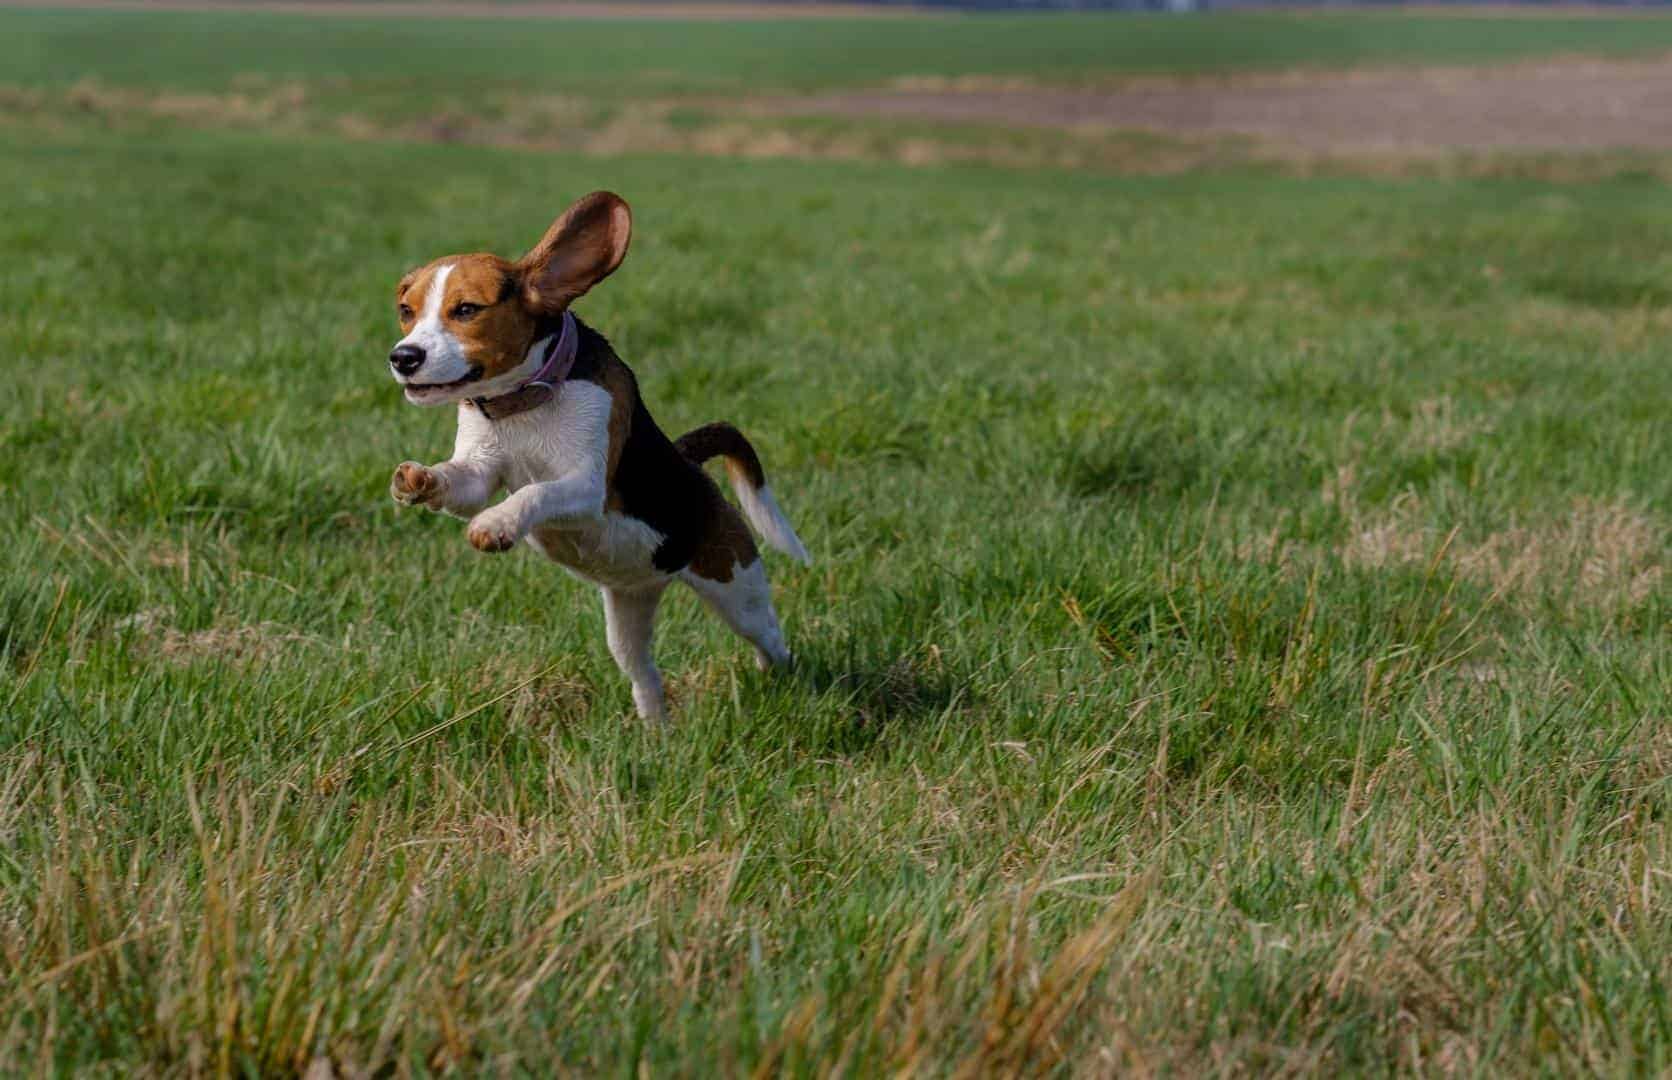 Der Beagle ist ein Arbeitshund, der zur Jagd gezüchtet wurde.Foto: unsplash.com © andreaelphotography